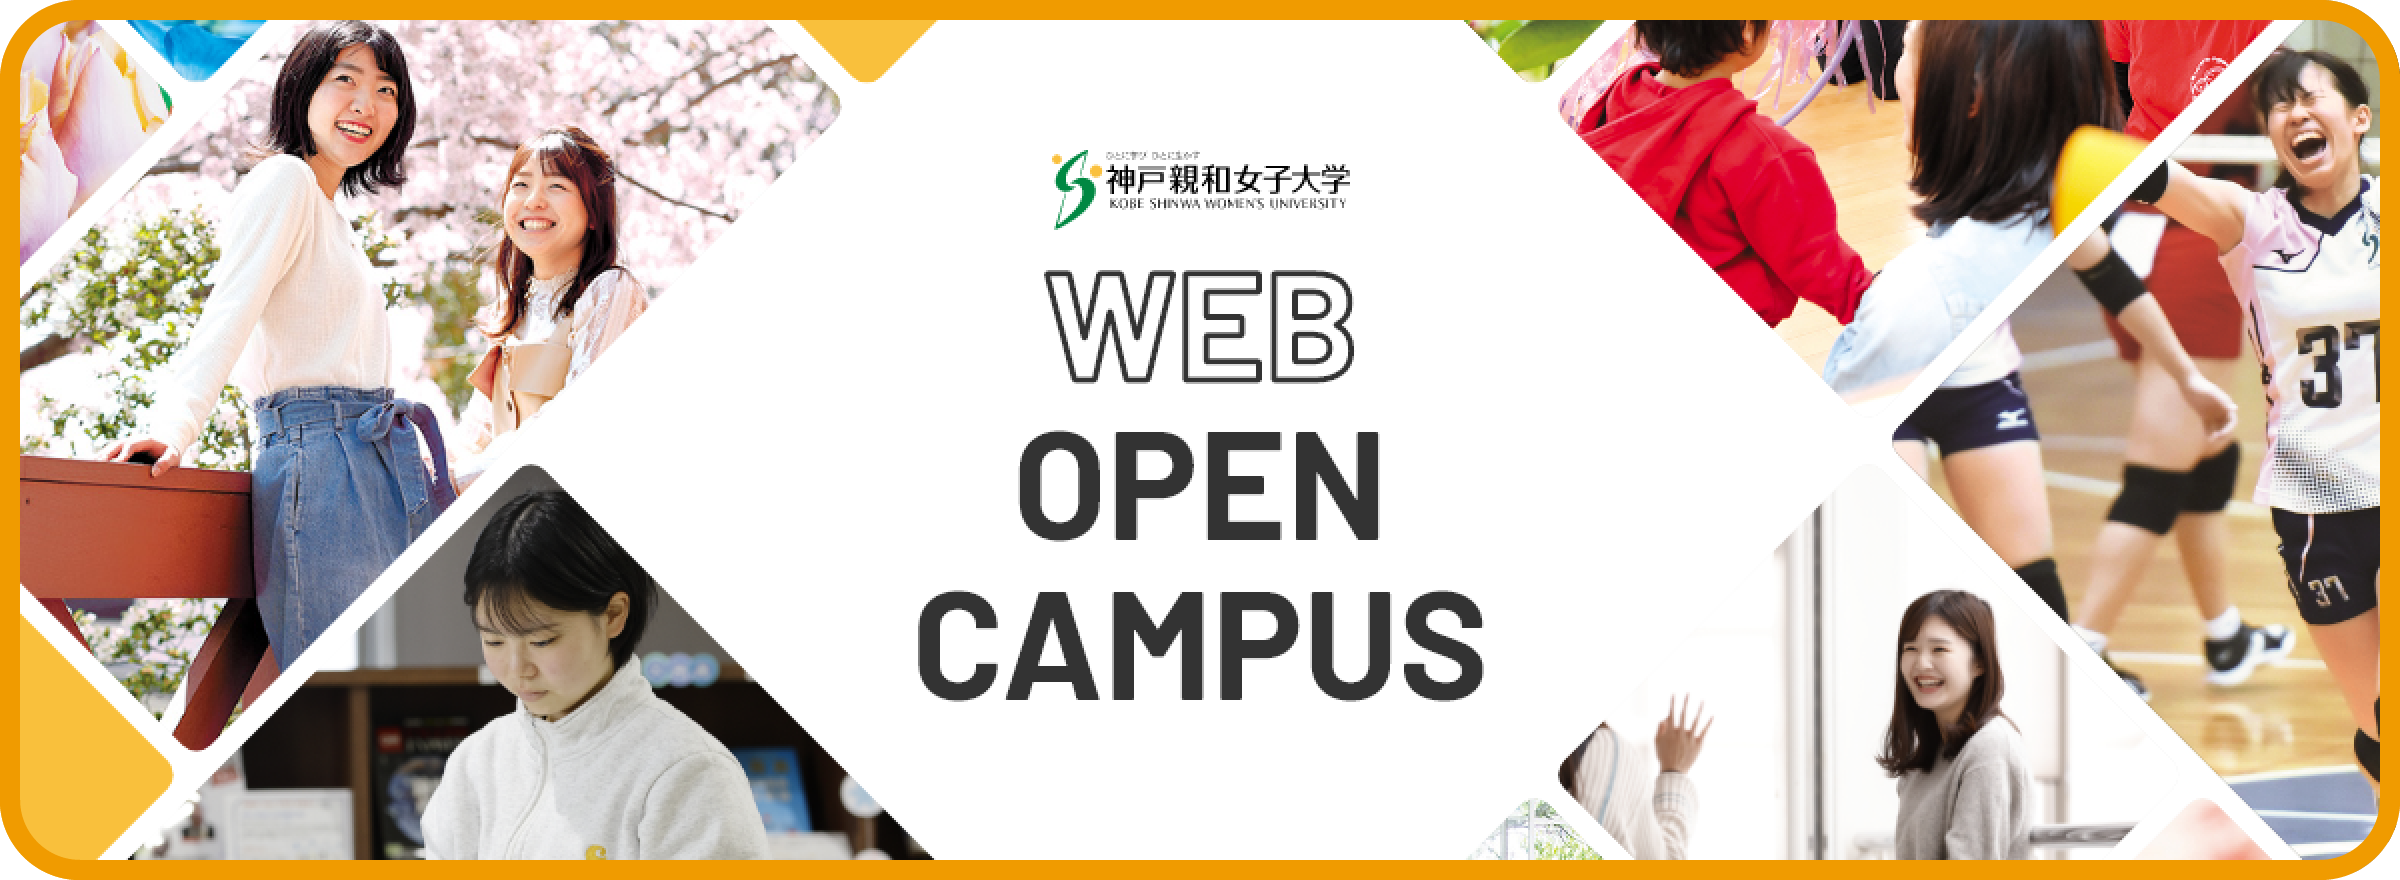 神戸親和女子大学 WEB OPEN CAMPUS